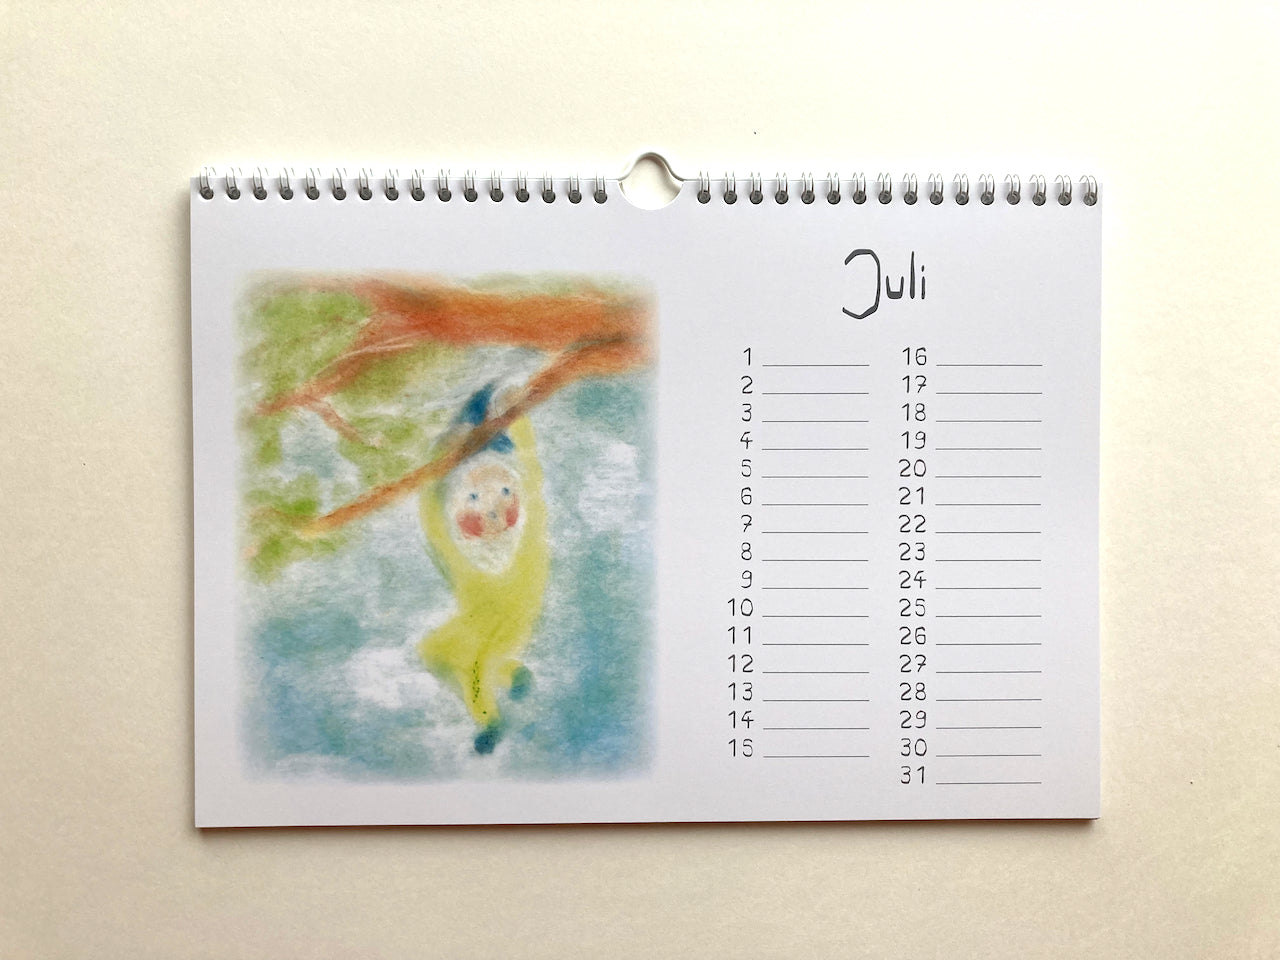 Immerwährender Zwergenkalender, Juli in Seccorell-Technik von Andrea Reiß